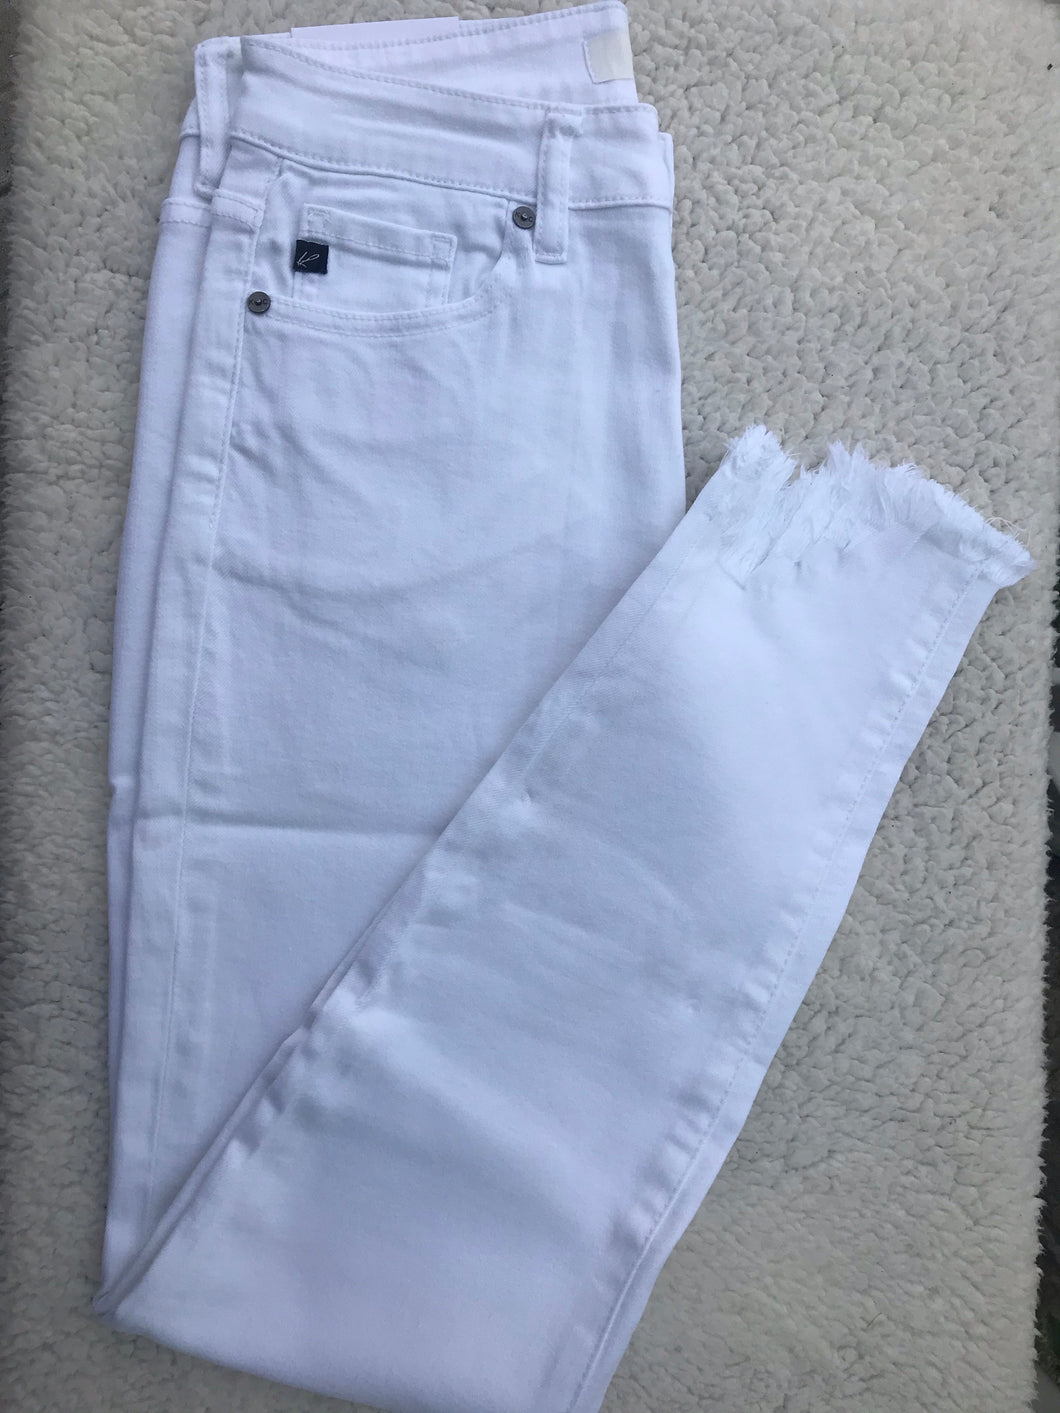 KanCan White Shark Bottom Jeans